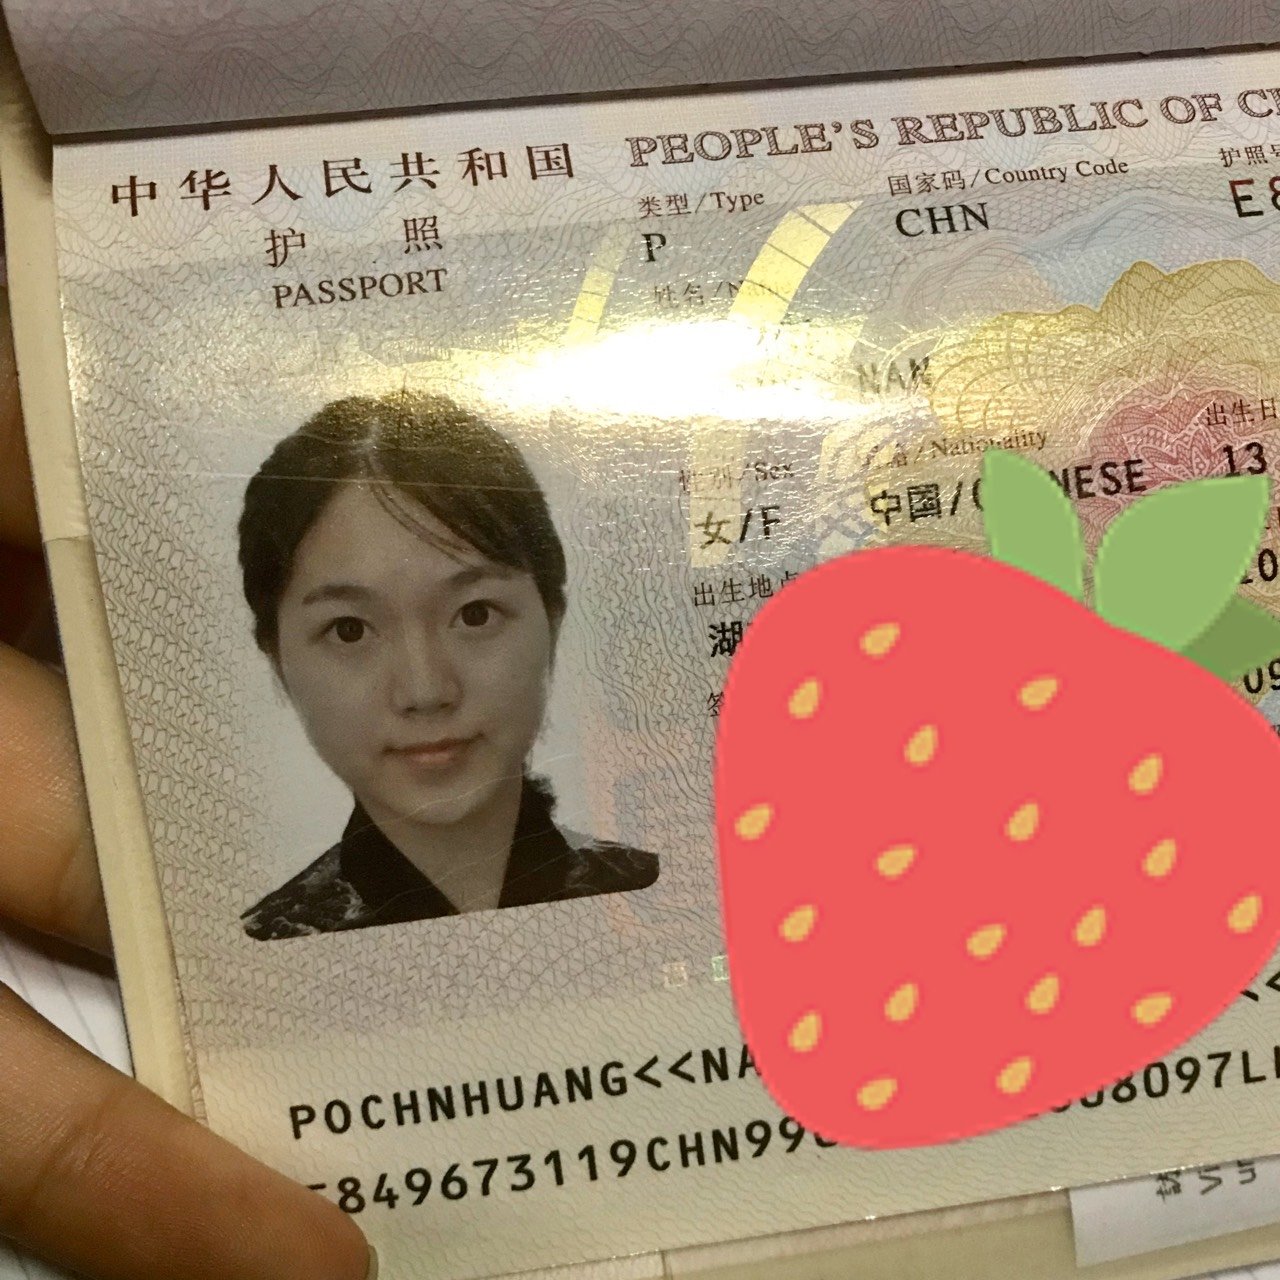 最好看的证件照竟然是护照上的照片,还是素颜拍出来的